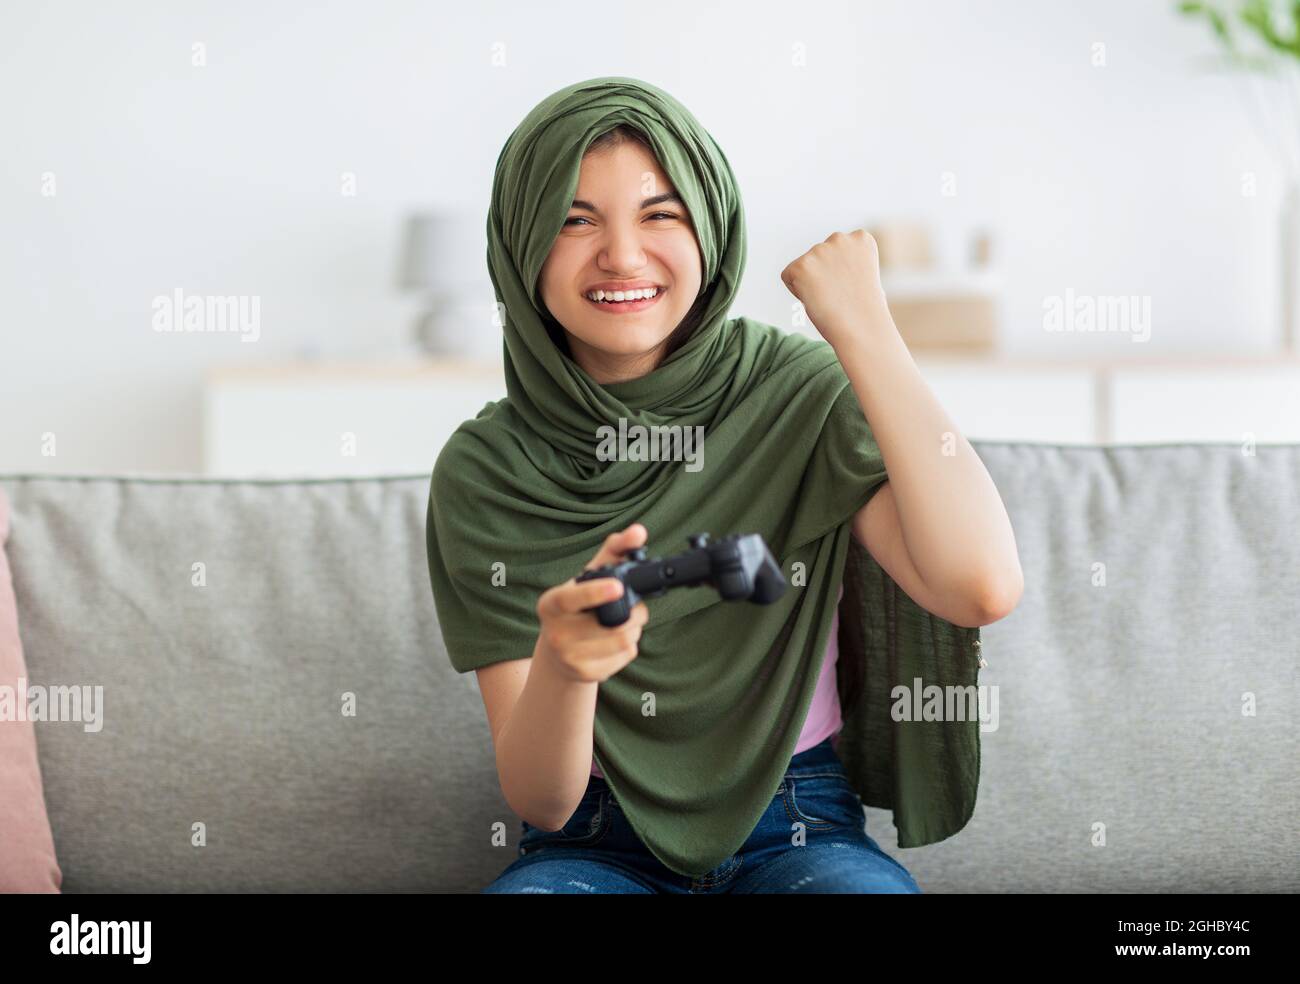 Ragazza teen indiana trionfante in hijab con joystick che gioca a videogame, facendo sì gesto, celebrando la vittoria a casa Foto Stock